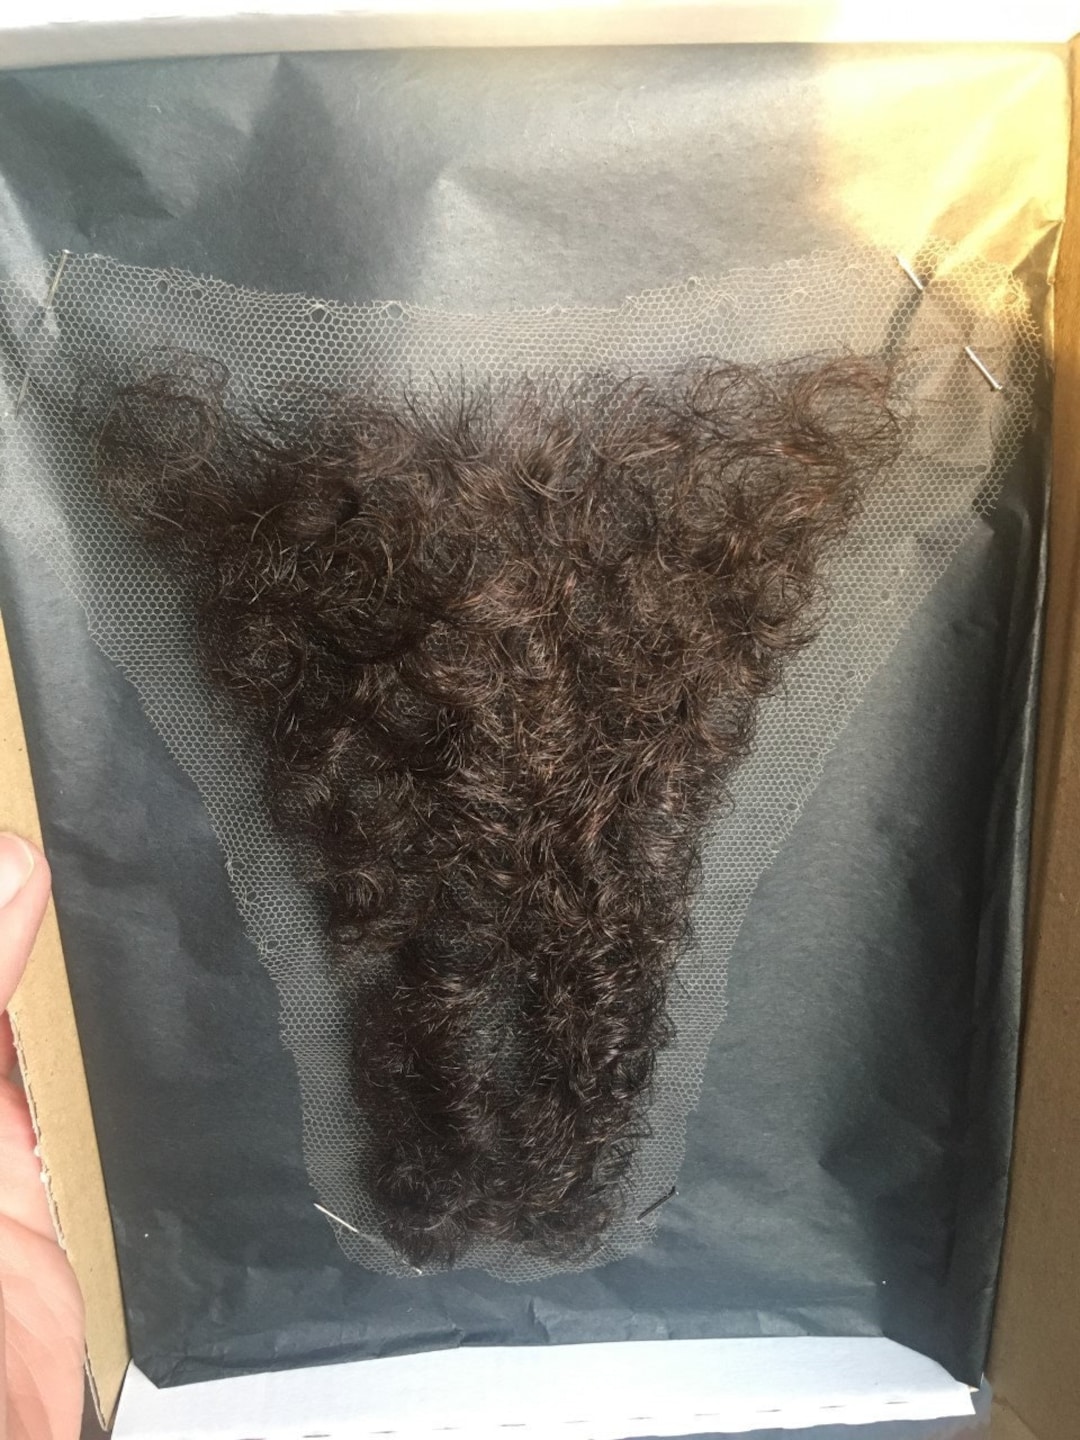 ZM hair female merkin pubic wig facial hair big size real human hair fake  pubic hair toupee